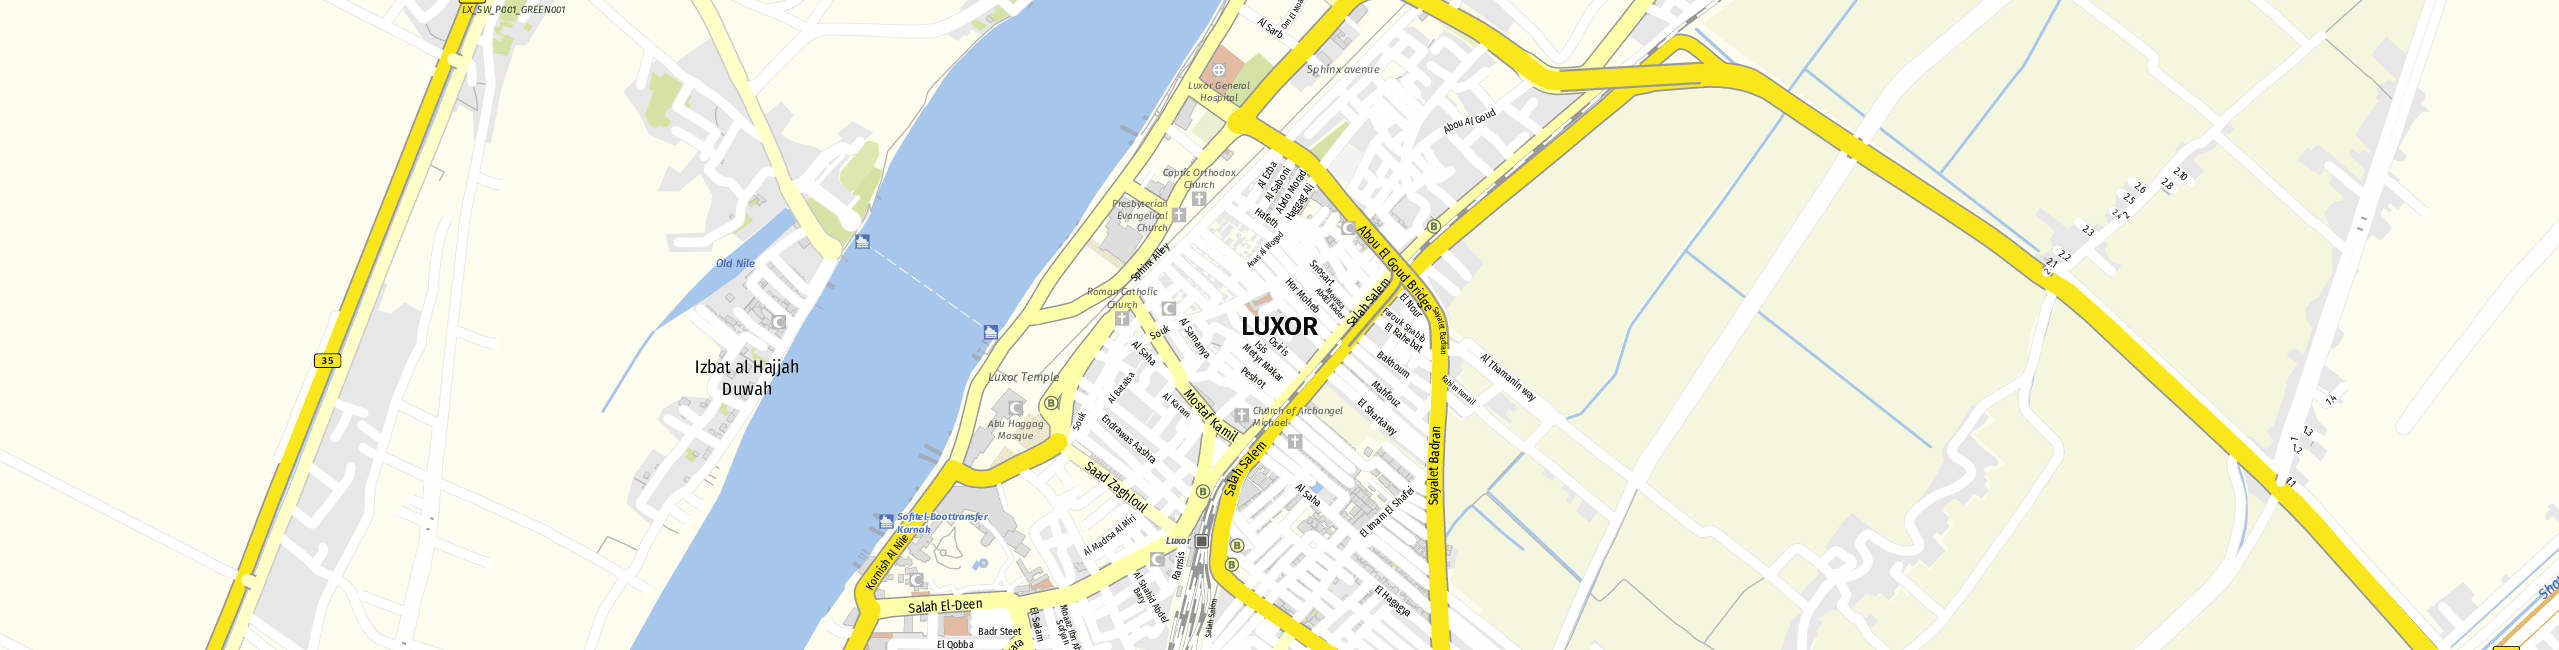 Stadtplan Luxor zum Downloaden.